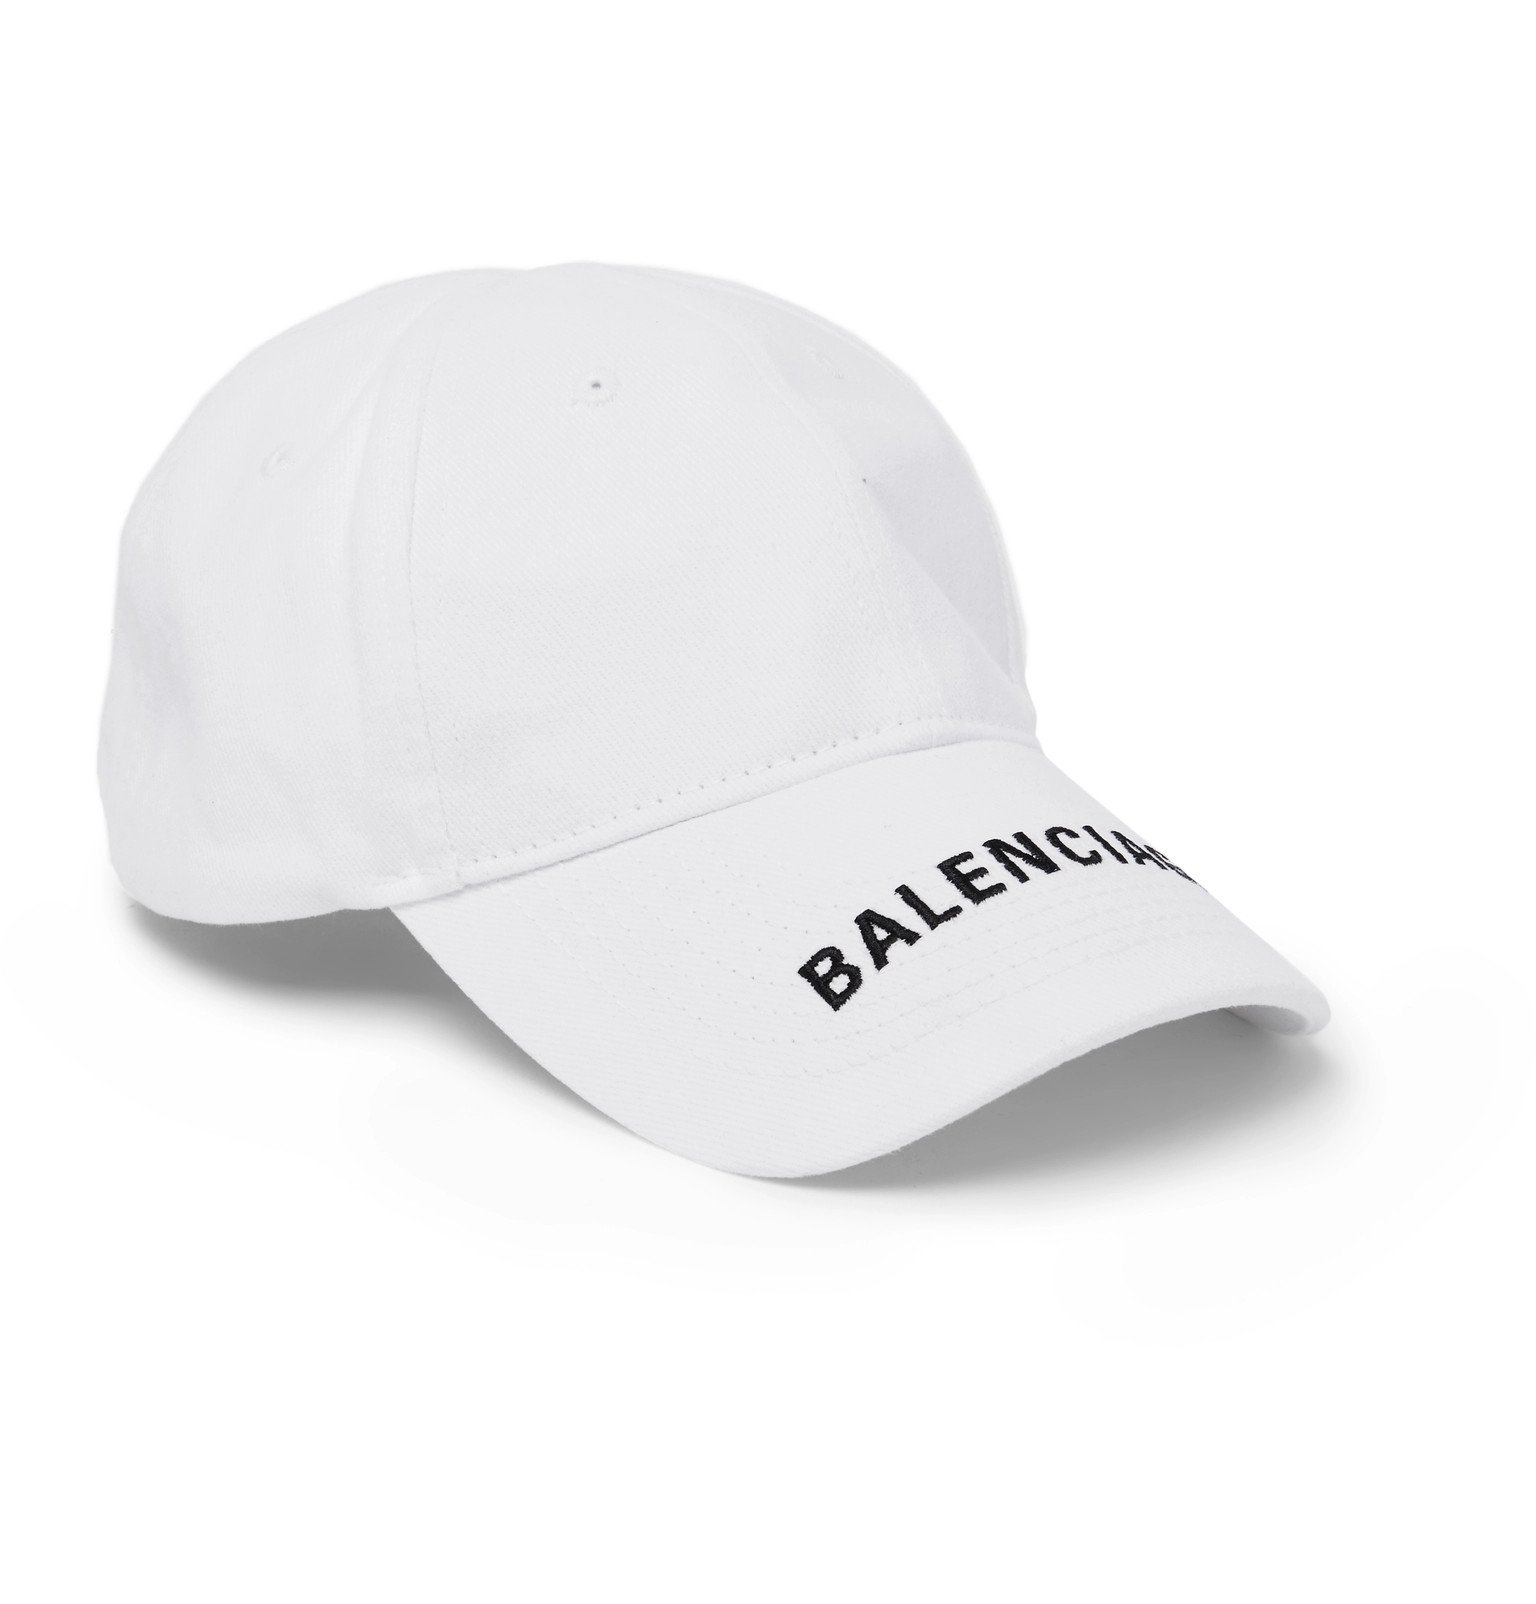 Balenciaga - Logo-Embroidered Cotton-Twill Baseball Cap - White Balenciaga